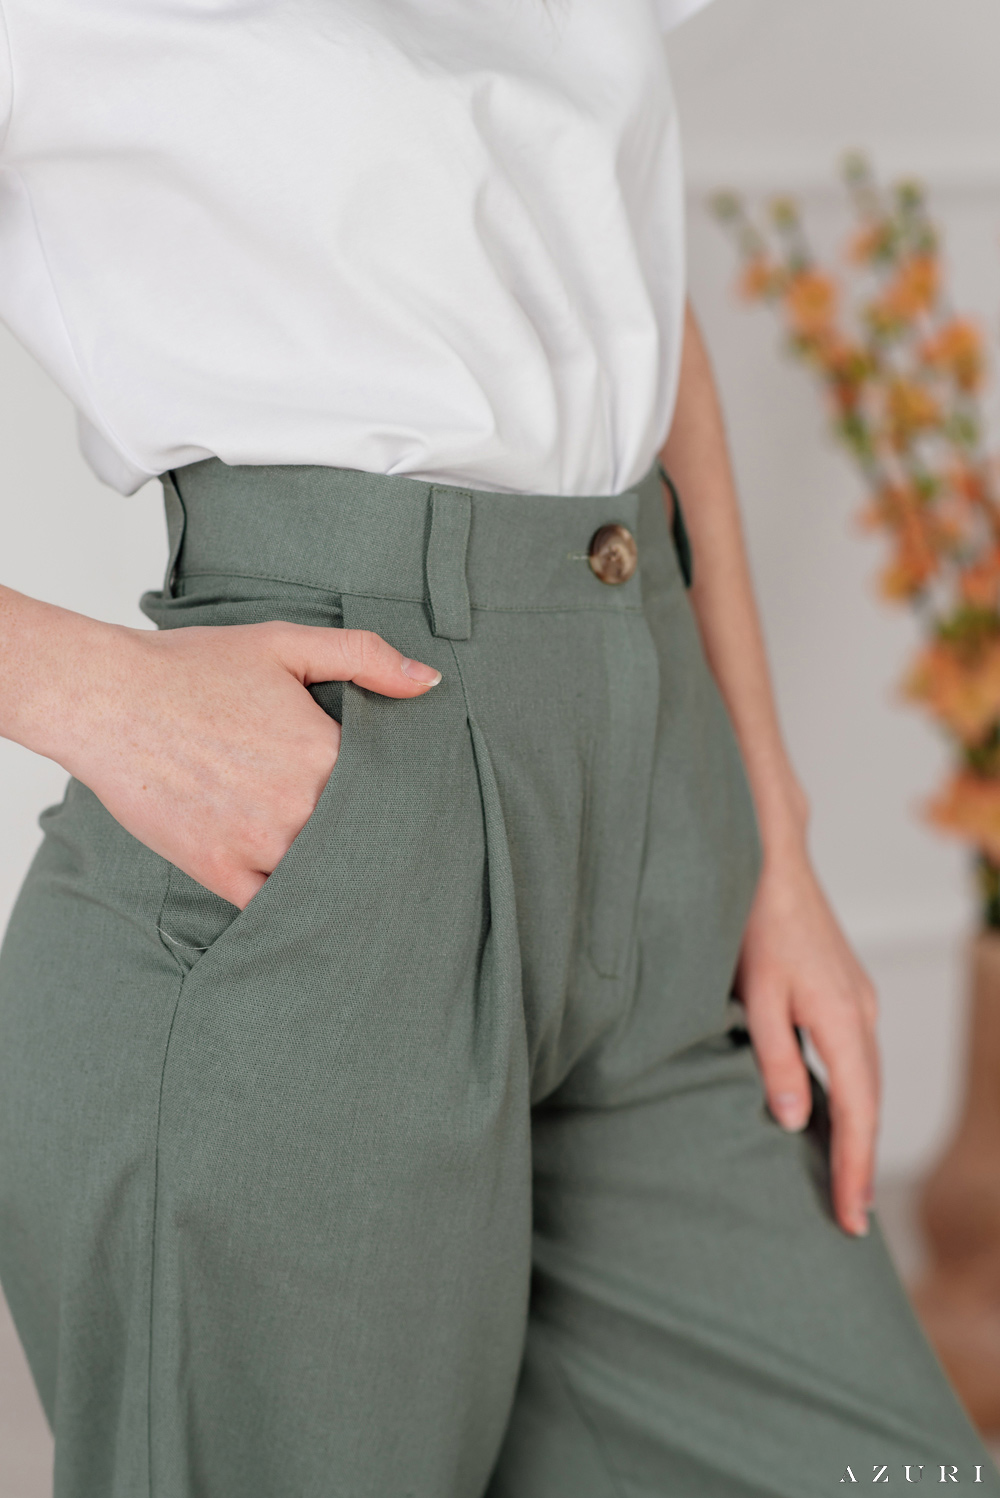 Оливковые льняные брюки с широкими штанинами